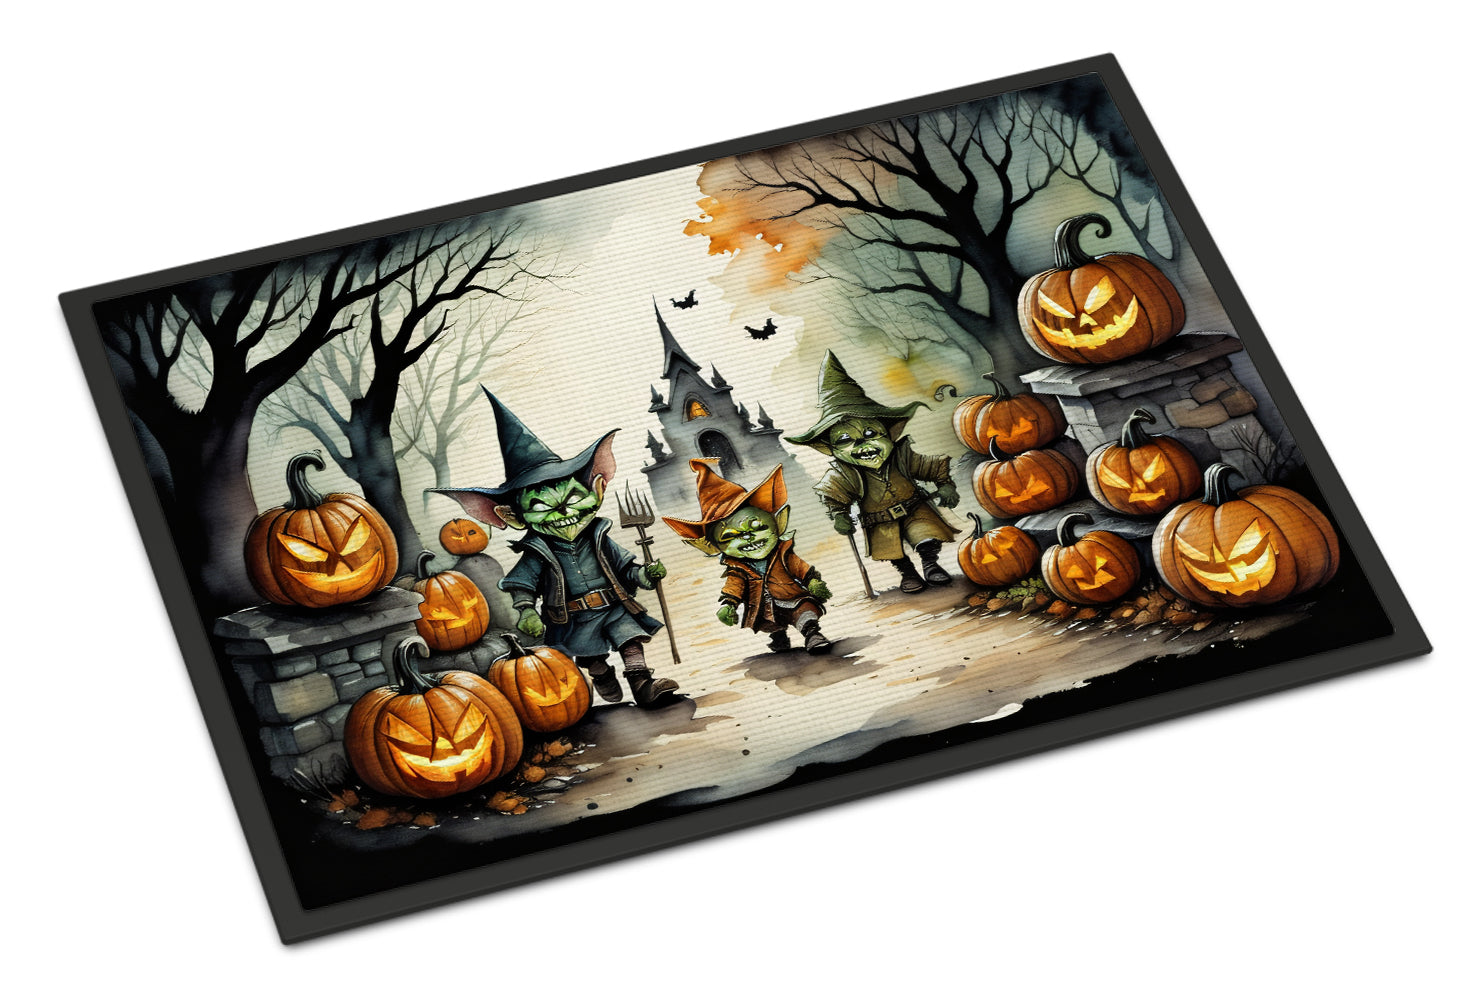 Buy this Goblins Spooky Halloween Doormat 18x27